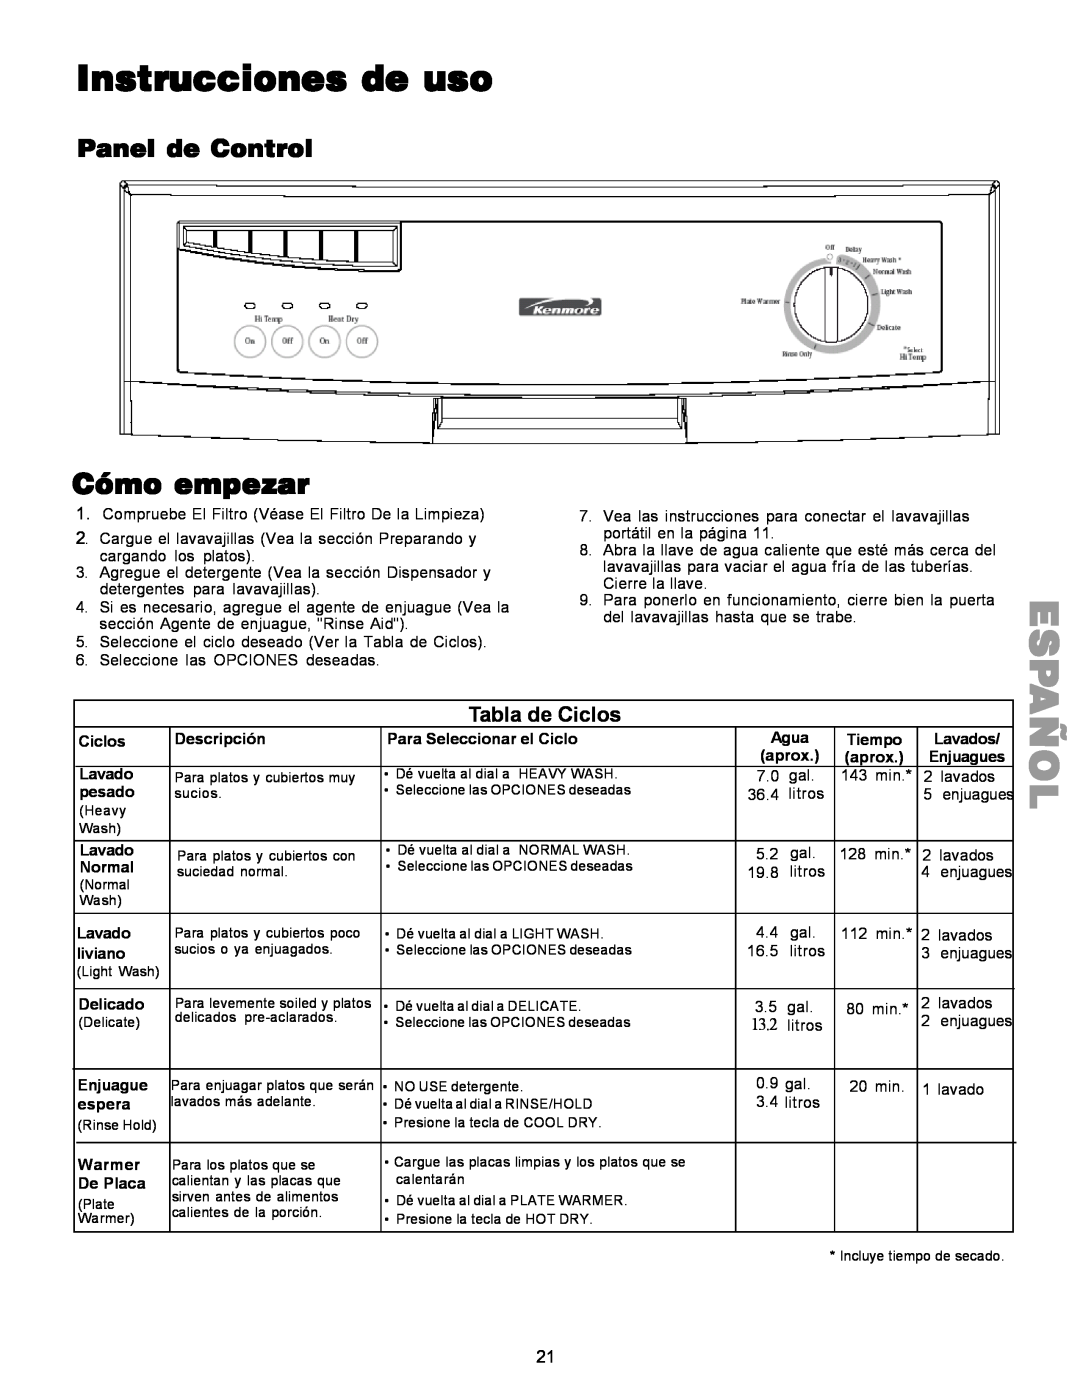 Kenmore 587.1441 manual Añol, Instrucciones de uso, Cómo empezar, Panel de Control, Tabla de Ciclos, 13.2 